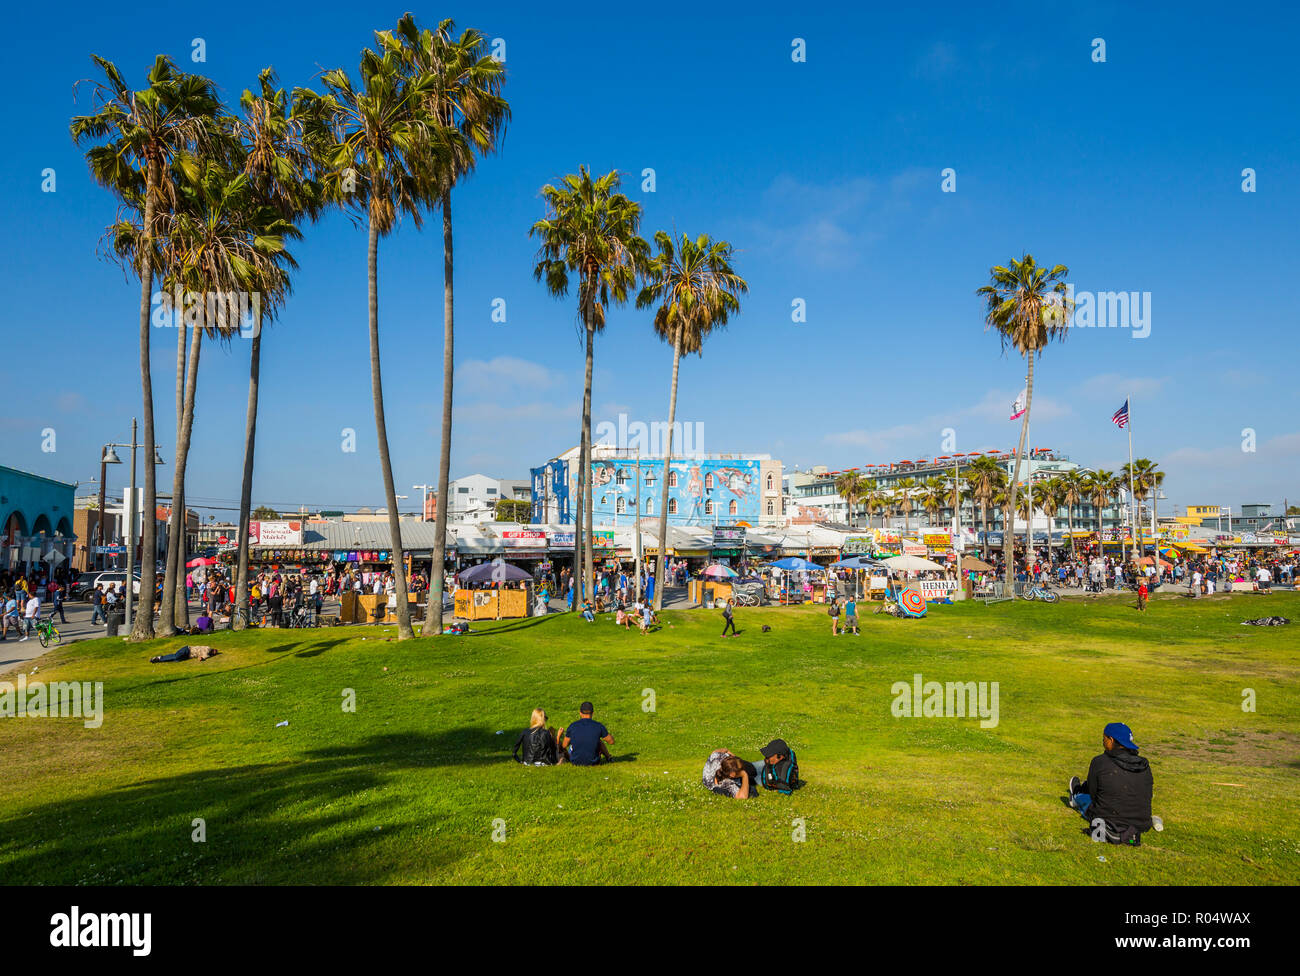 Vue sur les palmiers et les visiteurs sur Ocean Front Walk in Venice Beach, Los Angeles, Californie, États-Unis d'Amérique, Amérique du Nord Banque D'Images